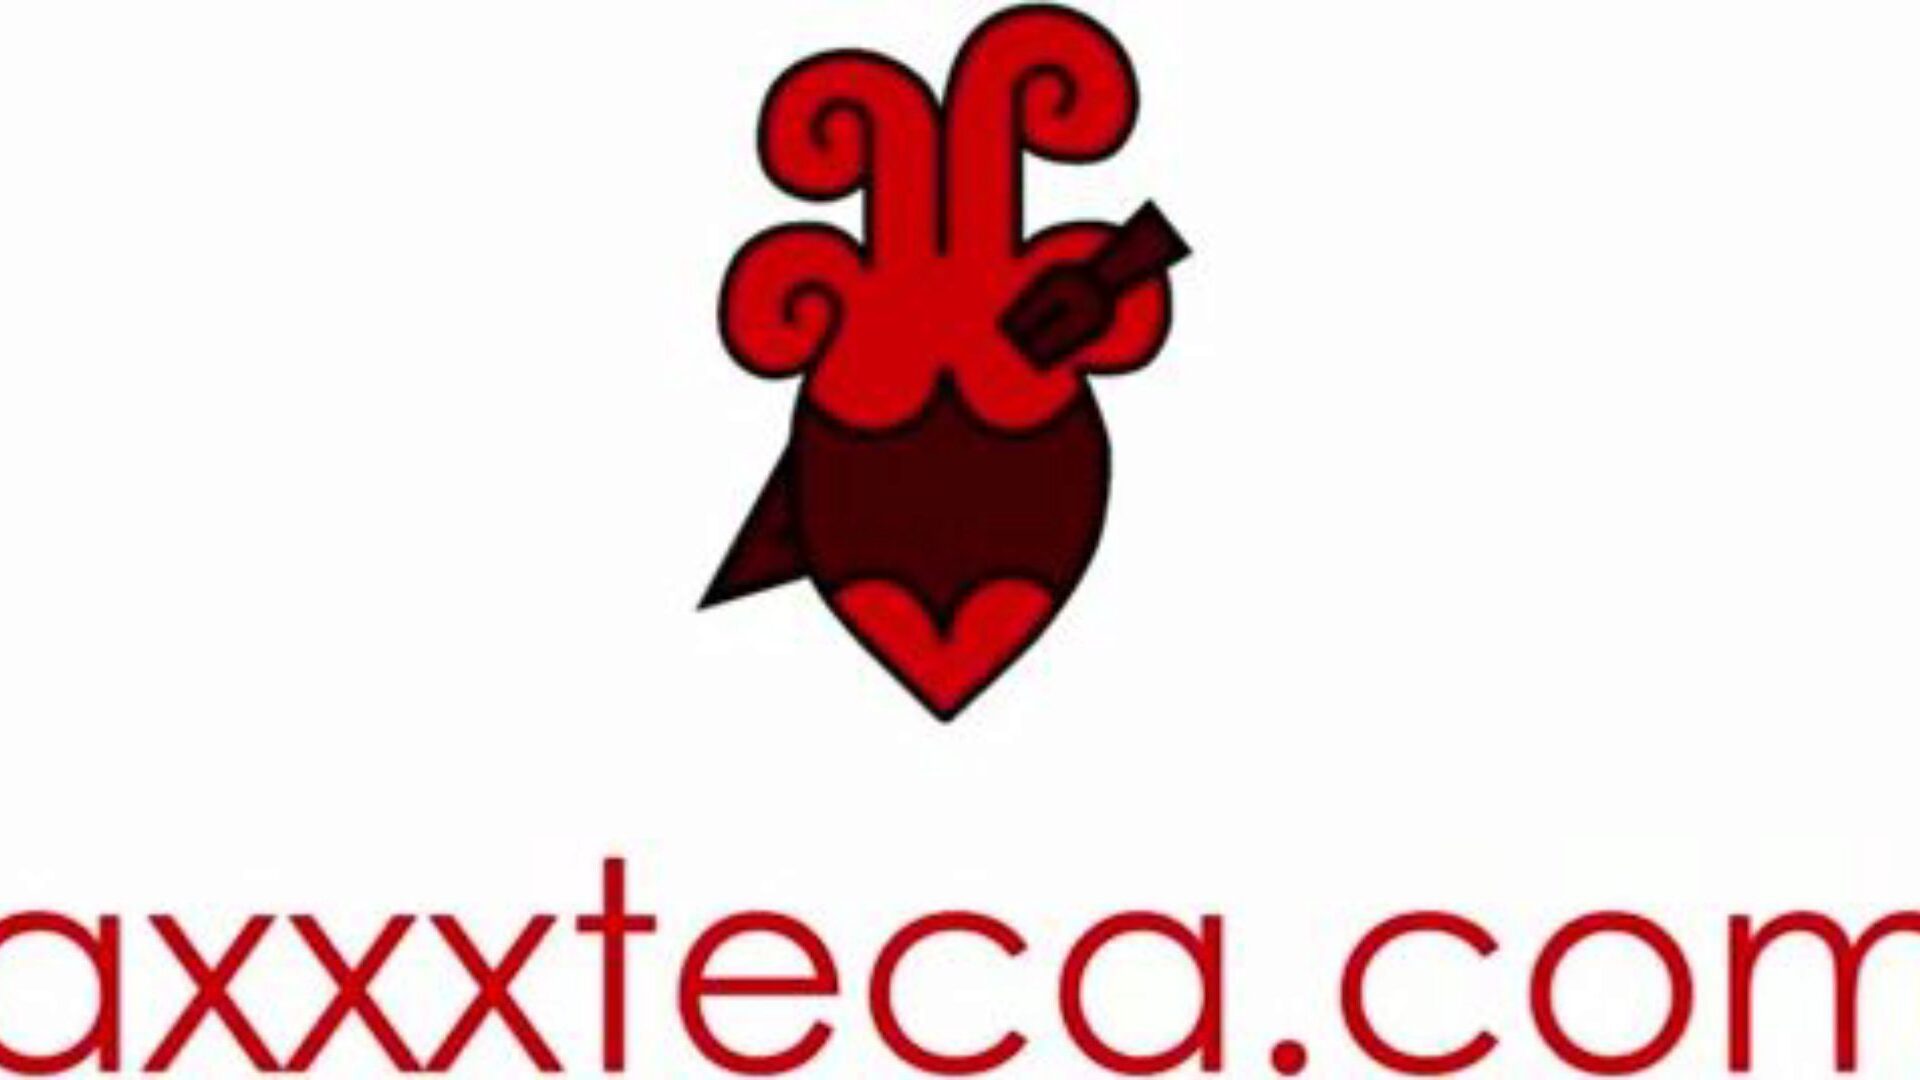 axxxteca المكسيكي الفصل بونكس له البرازيلي عمة في القانون ميا لينز في غازو